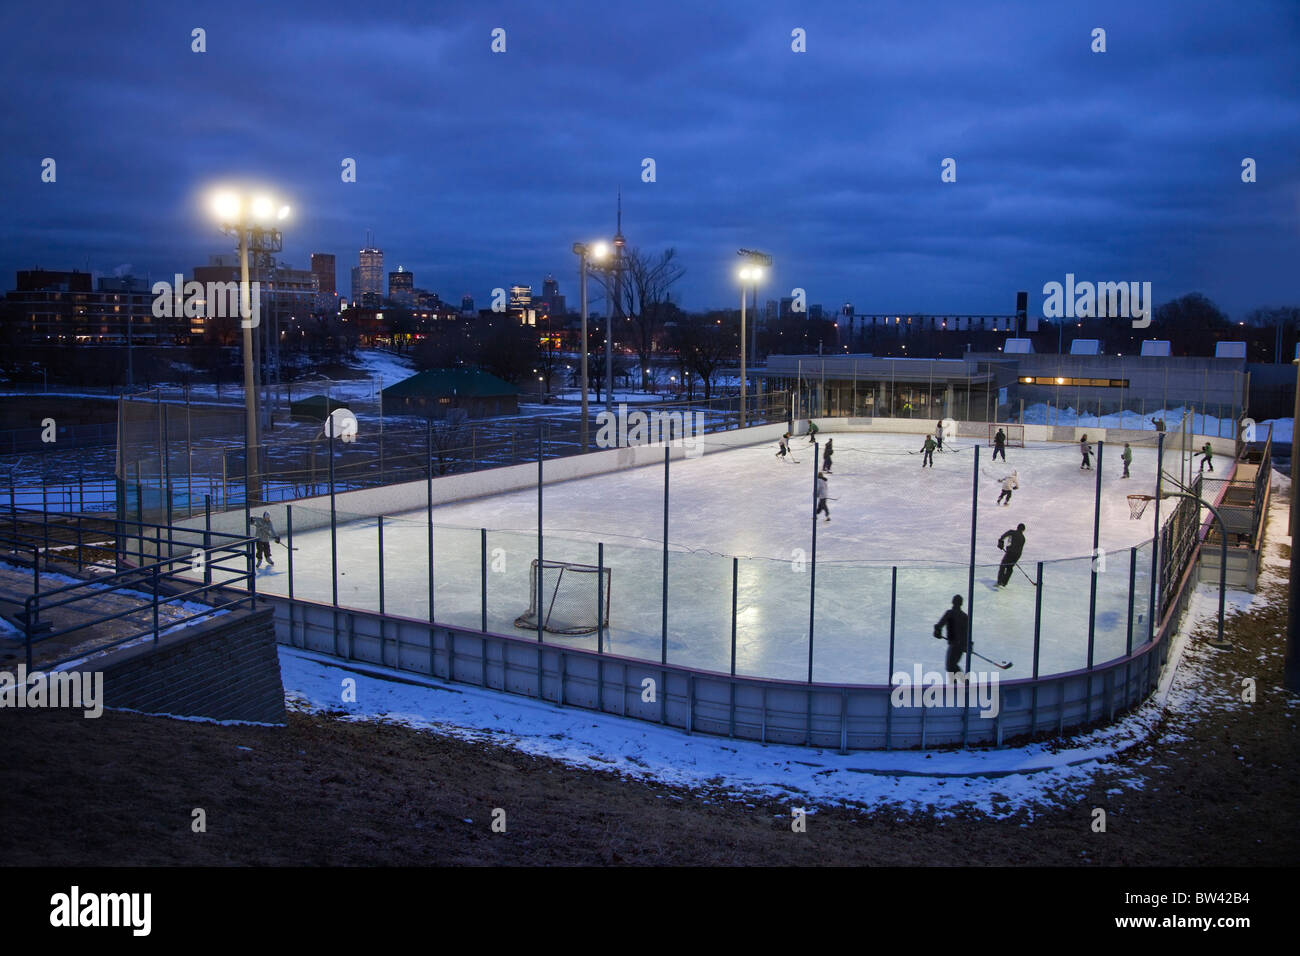 Abend-Skate auf Gemeinschaft Eisbahn, Toronto, Ontario, Kanada Stockfoto